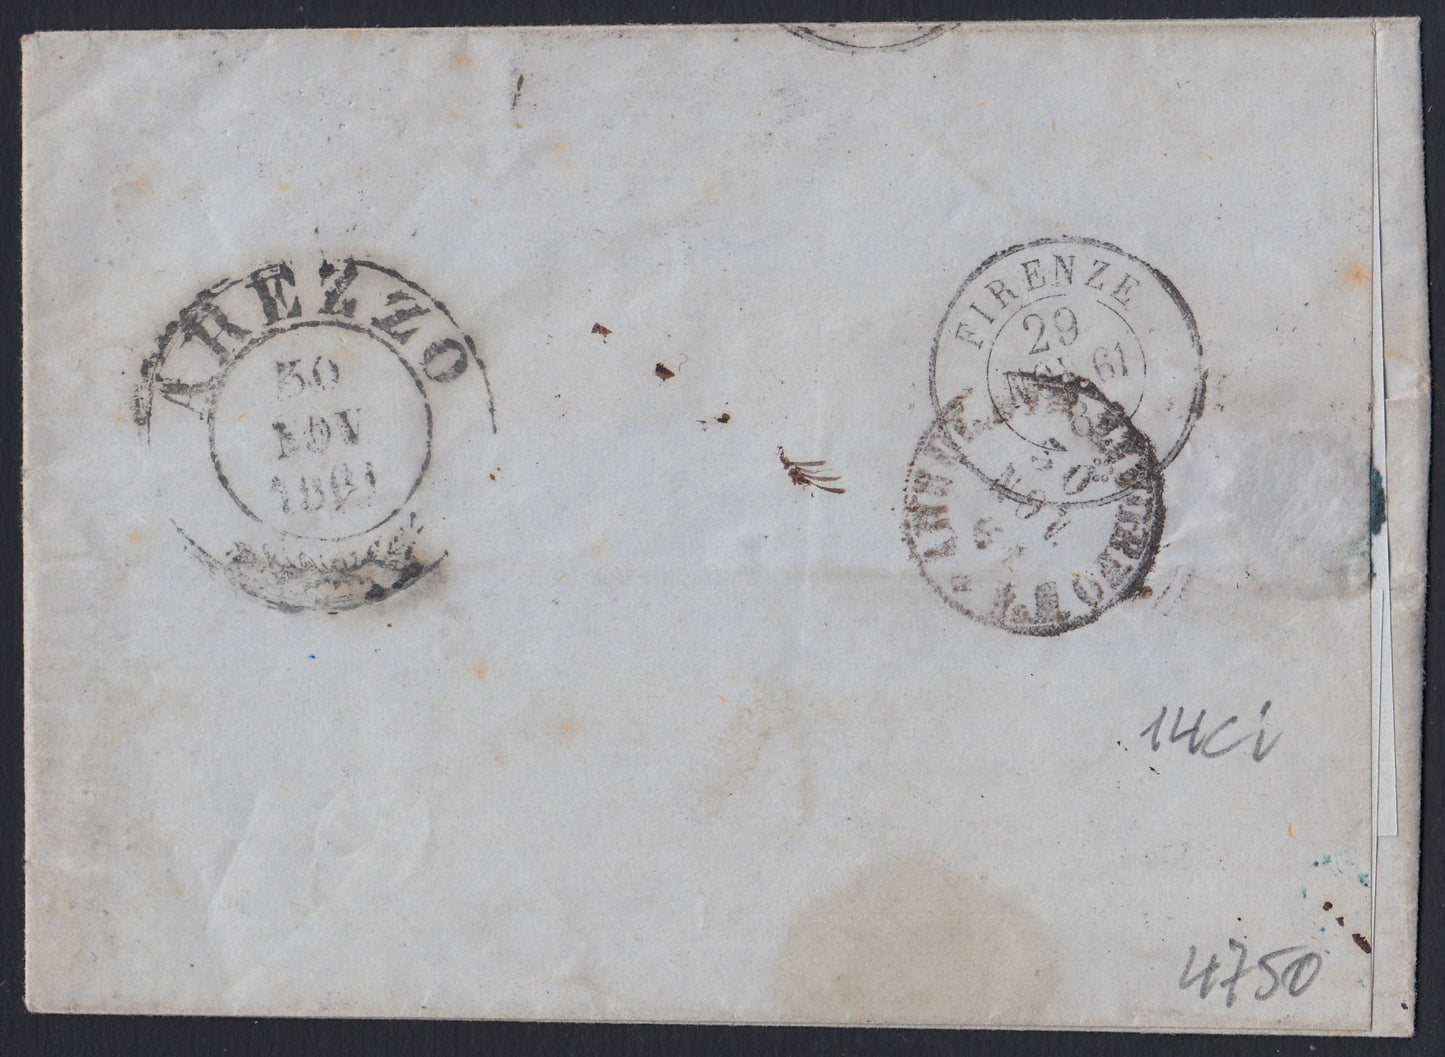 184 - 1861 - Lettera spedita da Pistoia per Arezzo 29/11/61 affrancata con c. 10 bruno cioccolato scuro II tavola. (14Ci).